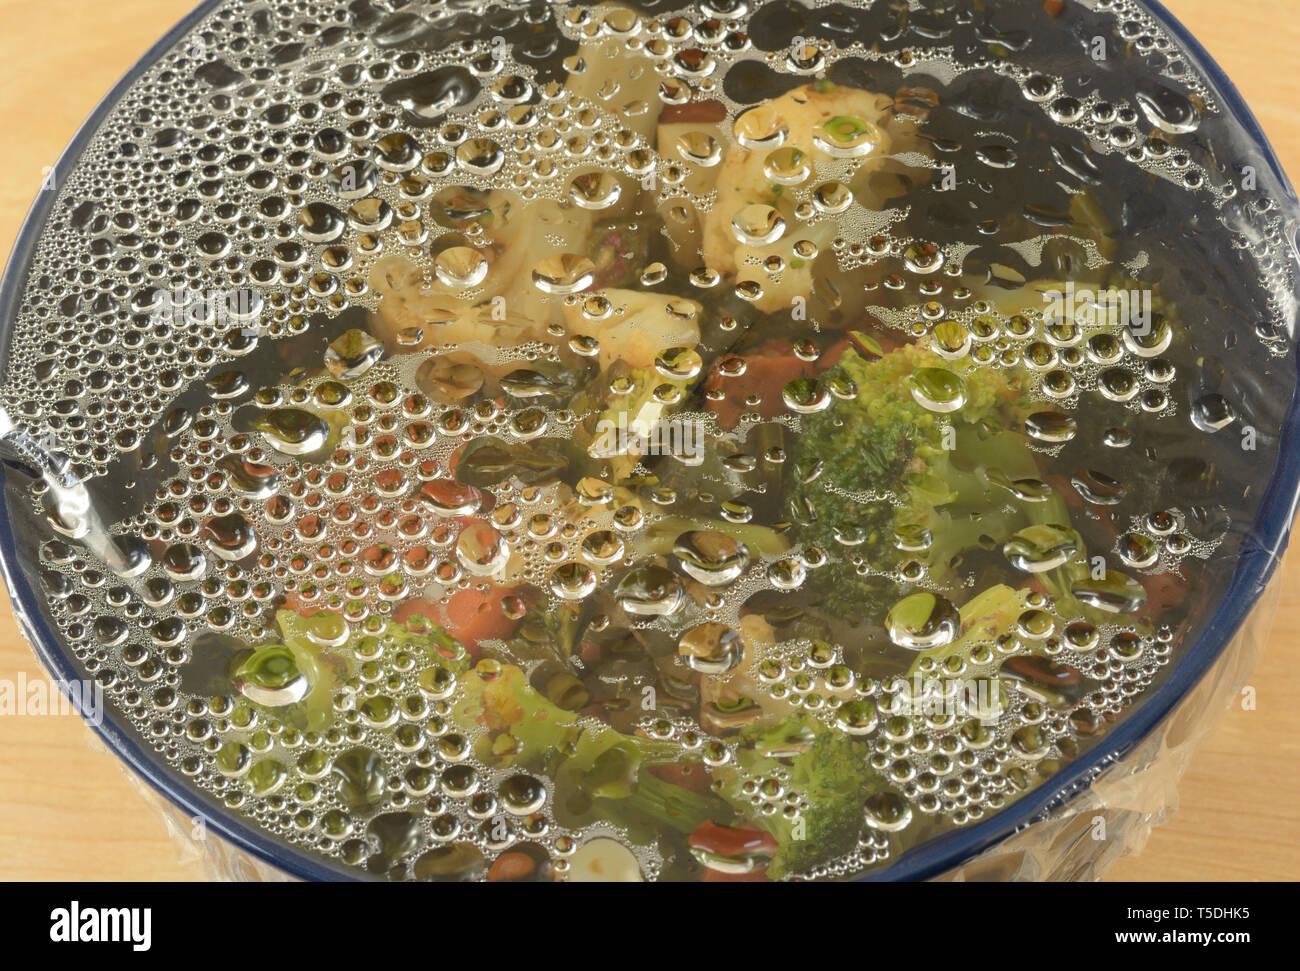 La condensation d'eau sur une pellicule plastique sur le bol de restes de légumes pris hors du réfrigérateur pour réchauffer le dîner Banque D'Images